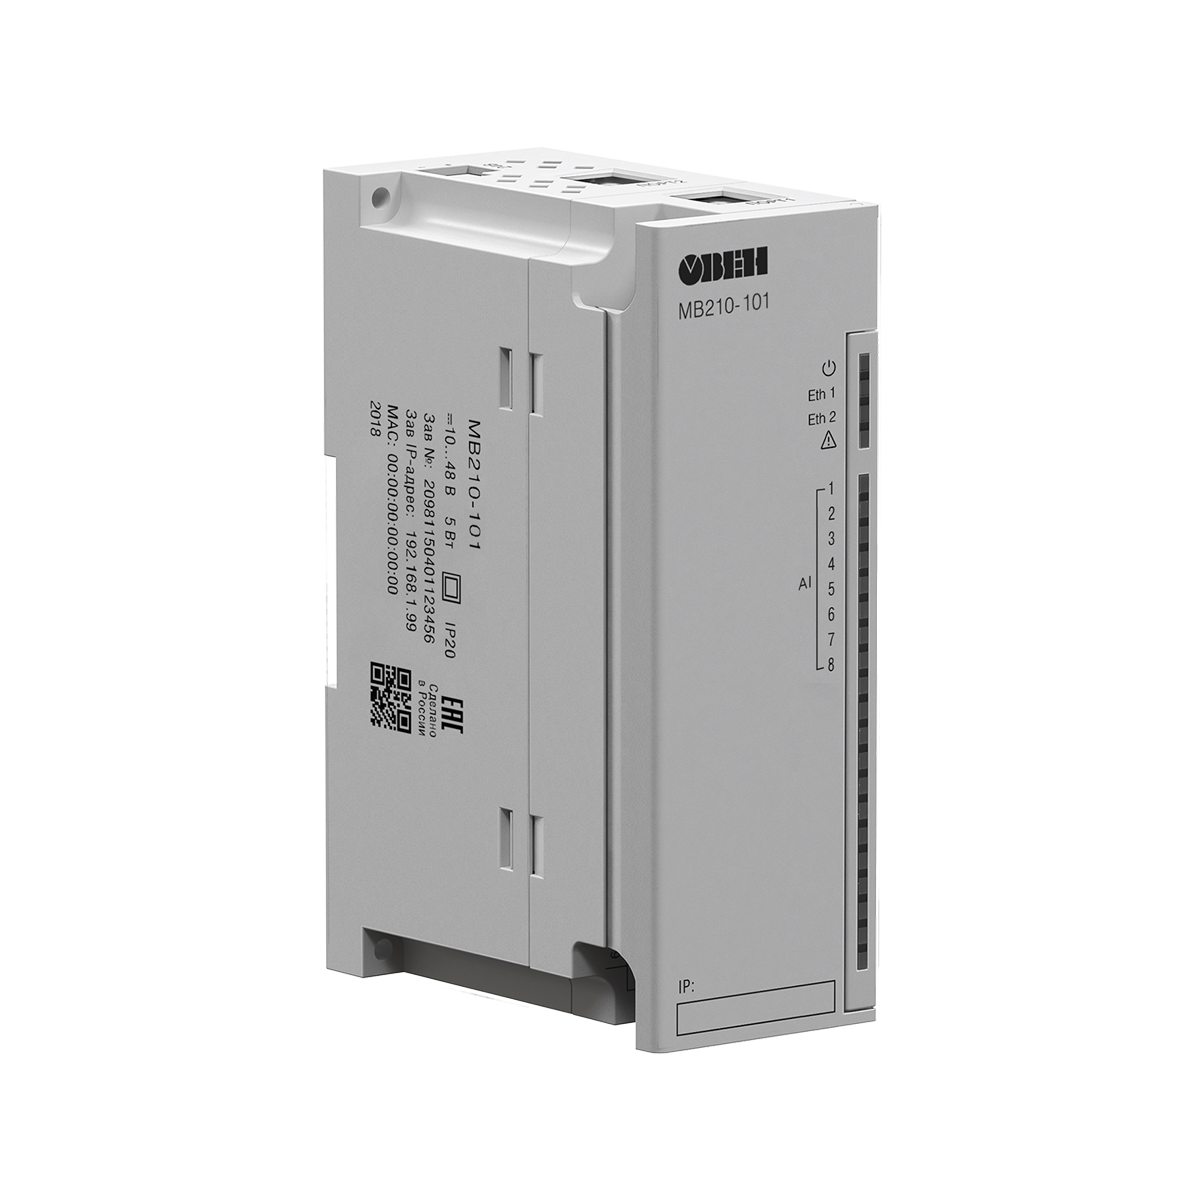 МВ210 ОВЕН модули аналогового ввода с универсальными входами (Ethernet)